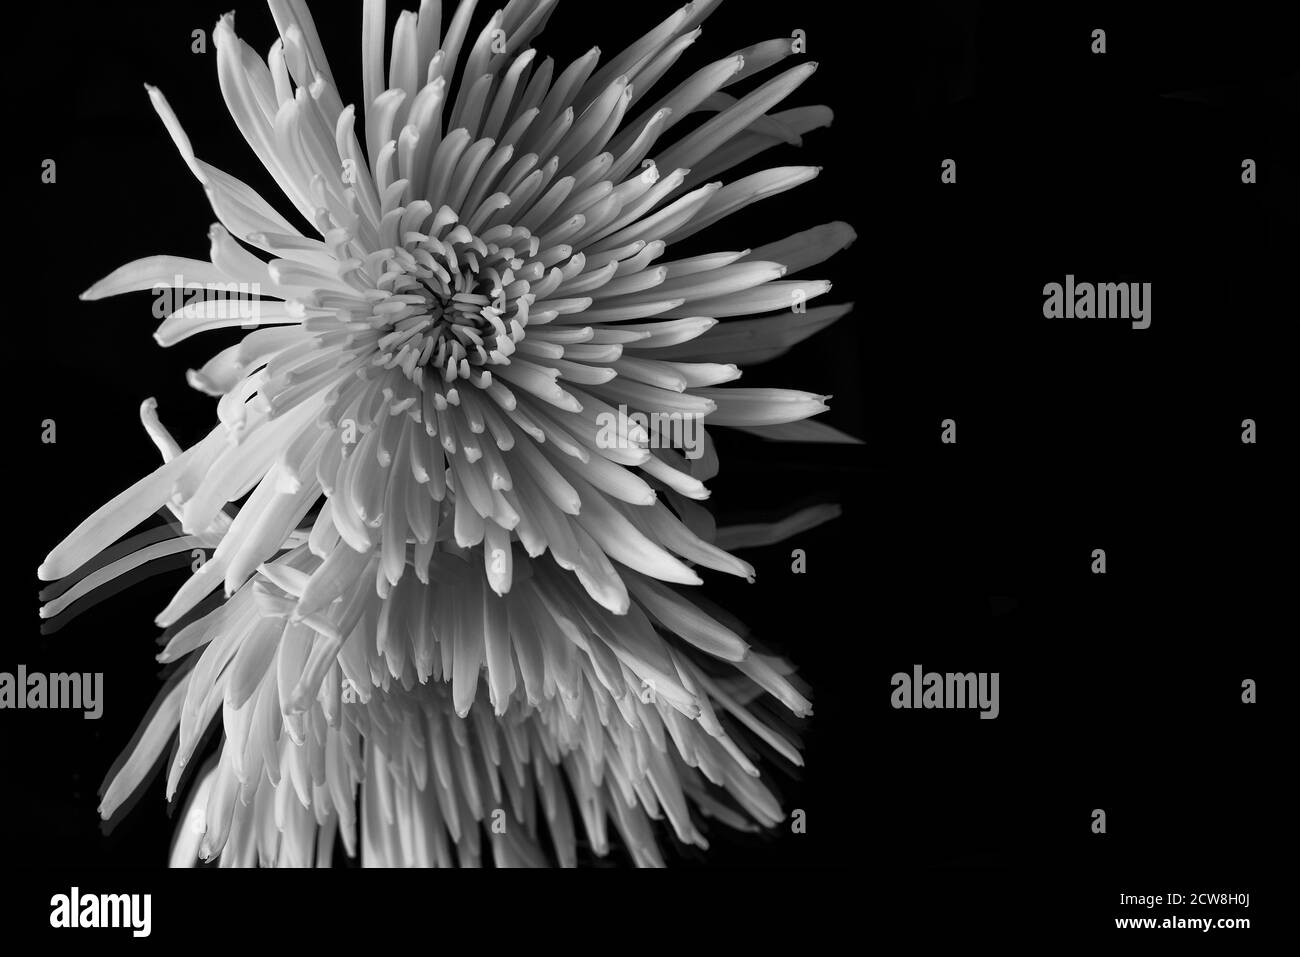 Grand chrysanthème fleuri avec réflexion en noir et blanc Banque D'Images